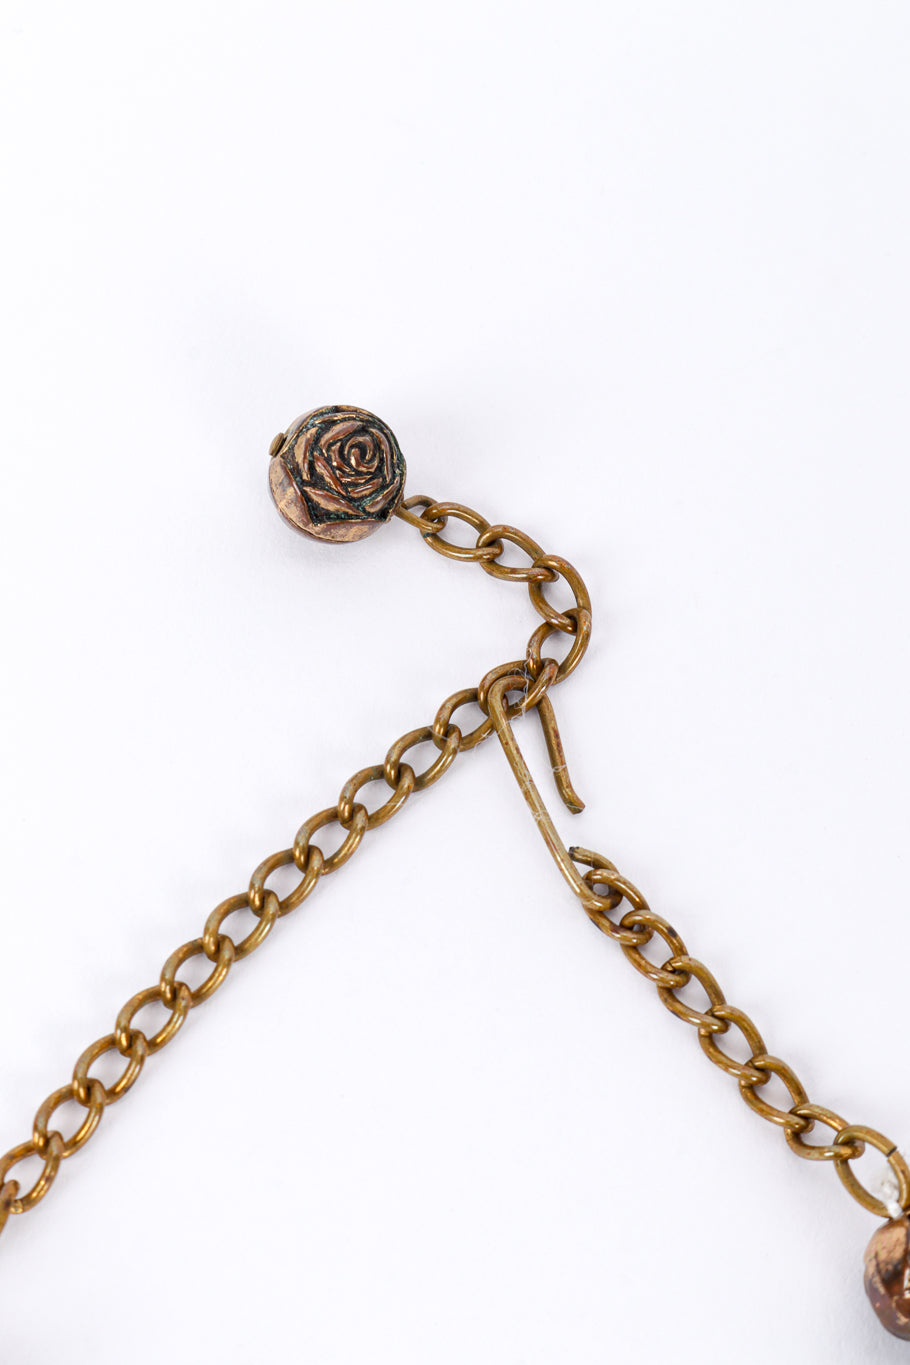 Vintage Crescent Bead Collar Necklace hook closure @recessla